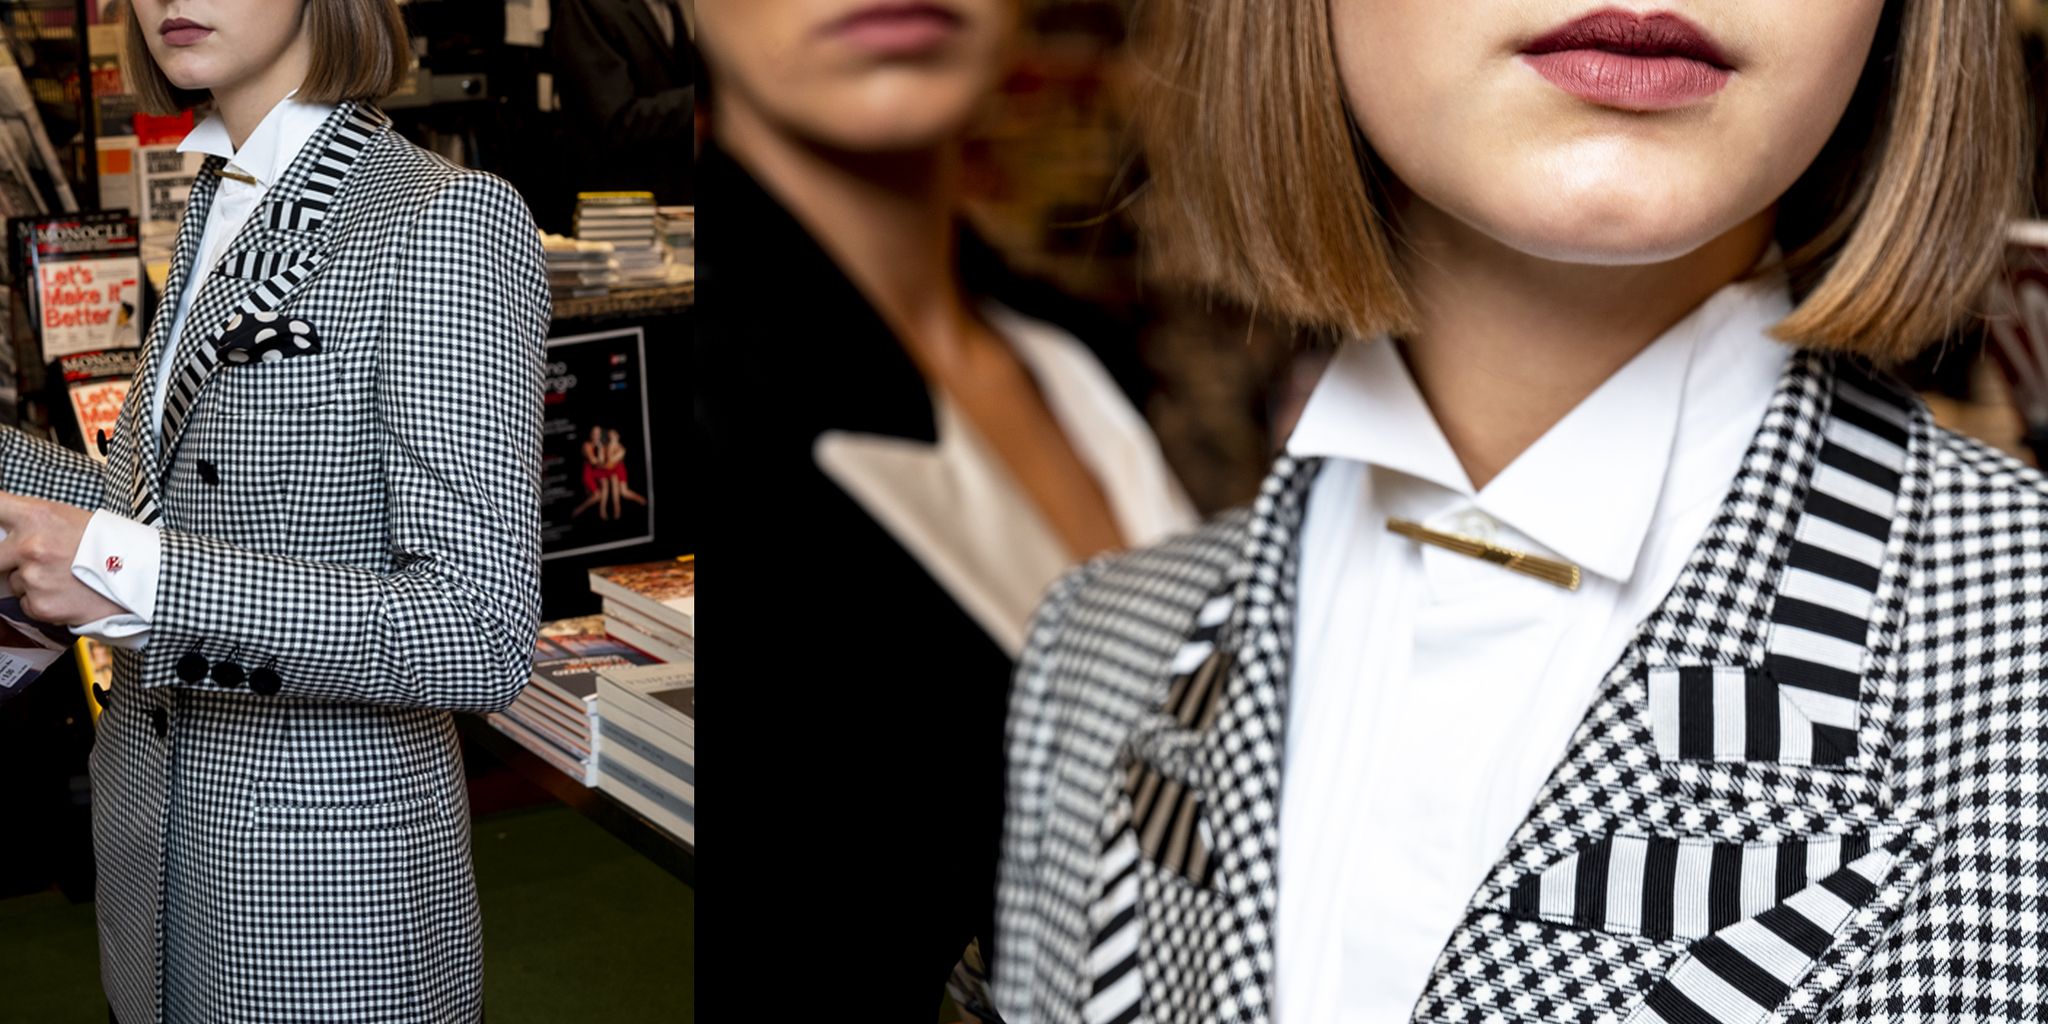 Nasco Unico è il progetto di blazer su misura ideato dalla designer Andrea Francardo, dove i tessuti sono tagli unici, i dettagli del blazer donna scelti con cura in un'esperienza di shopping totalmente nuova.